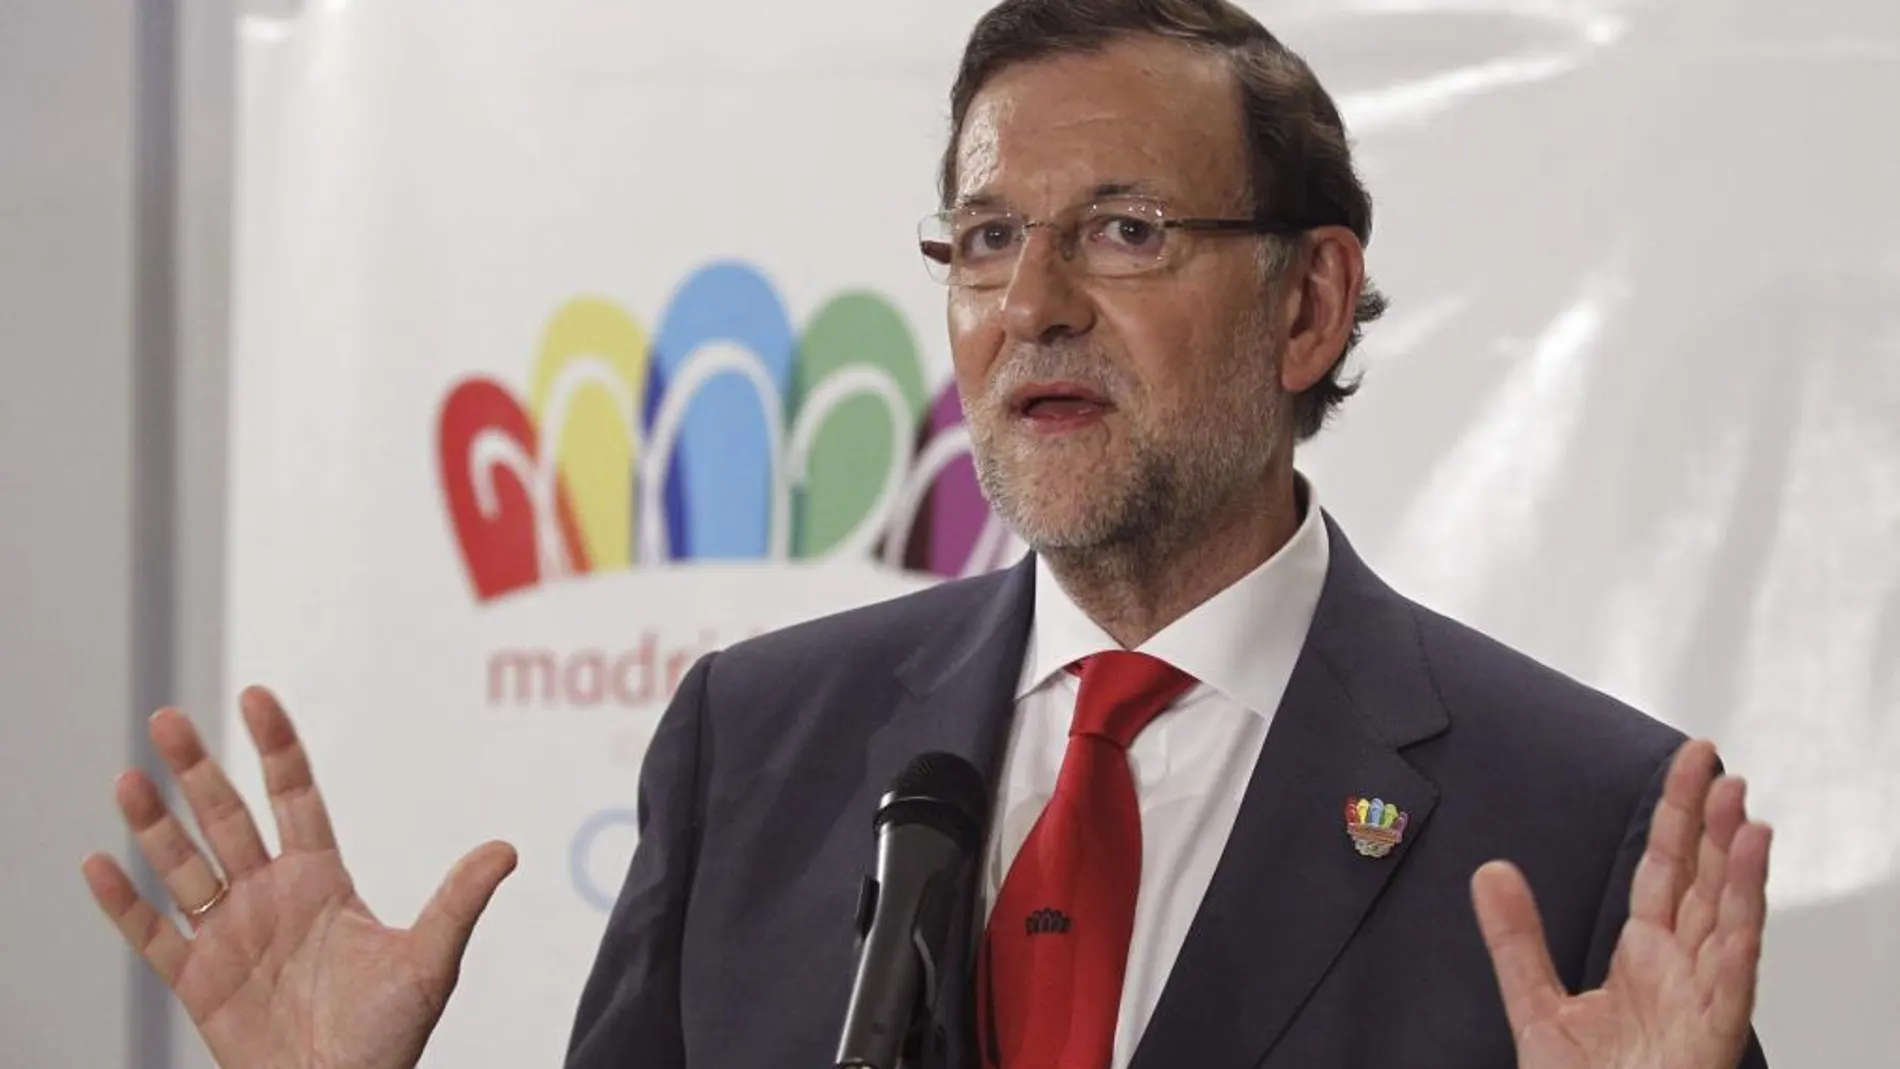 El presidente del Gobierno, Mariano Rajoy, hace declaraciones en el Hotel NH de Buenos Aires tras conocer la eliminación de Madrid como sede de los Juegos Olímpicos en 2020